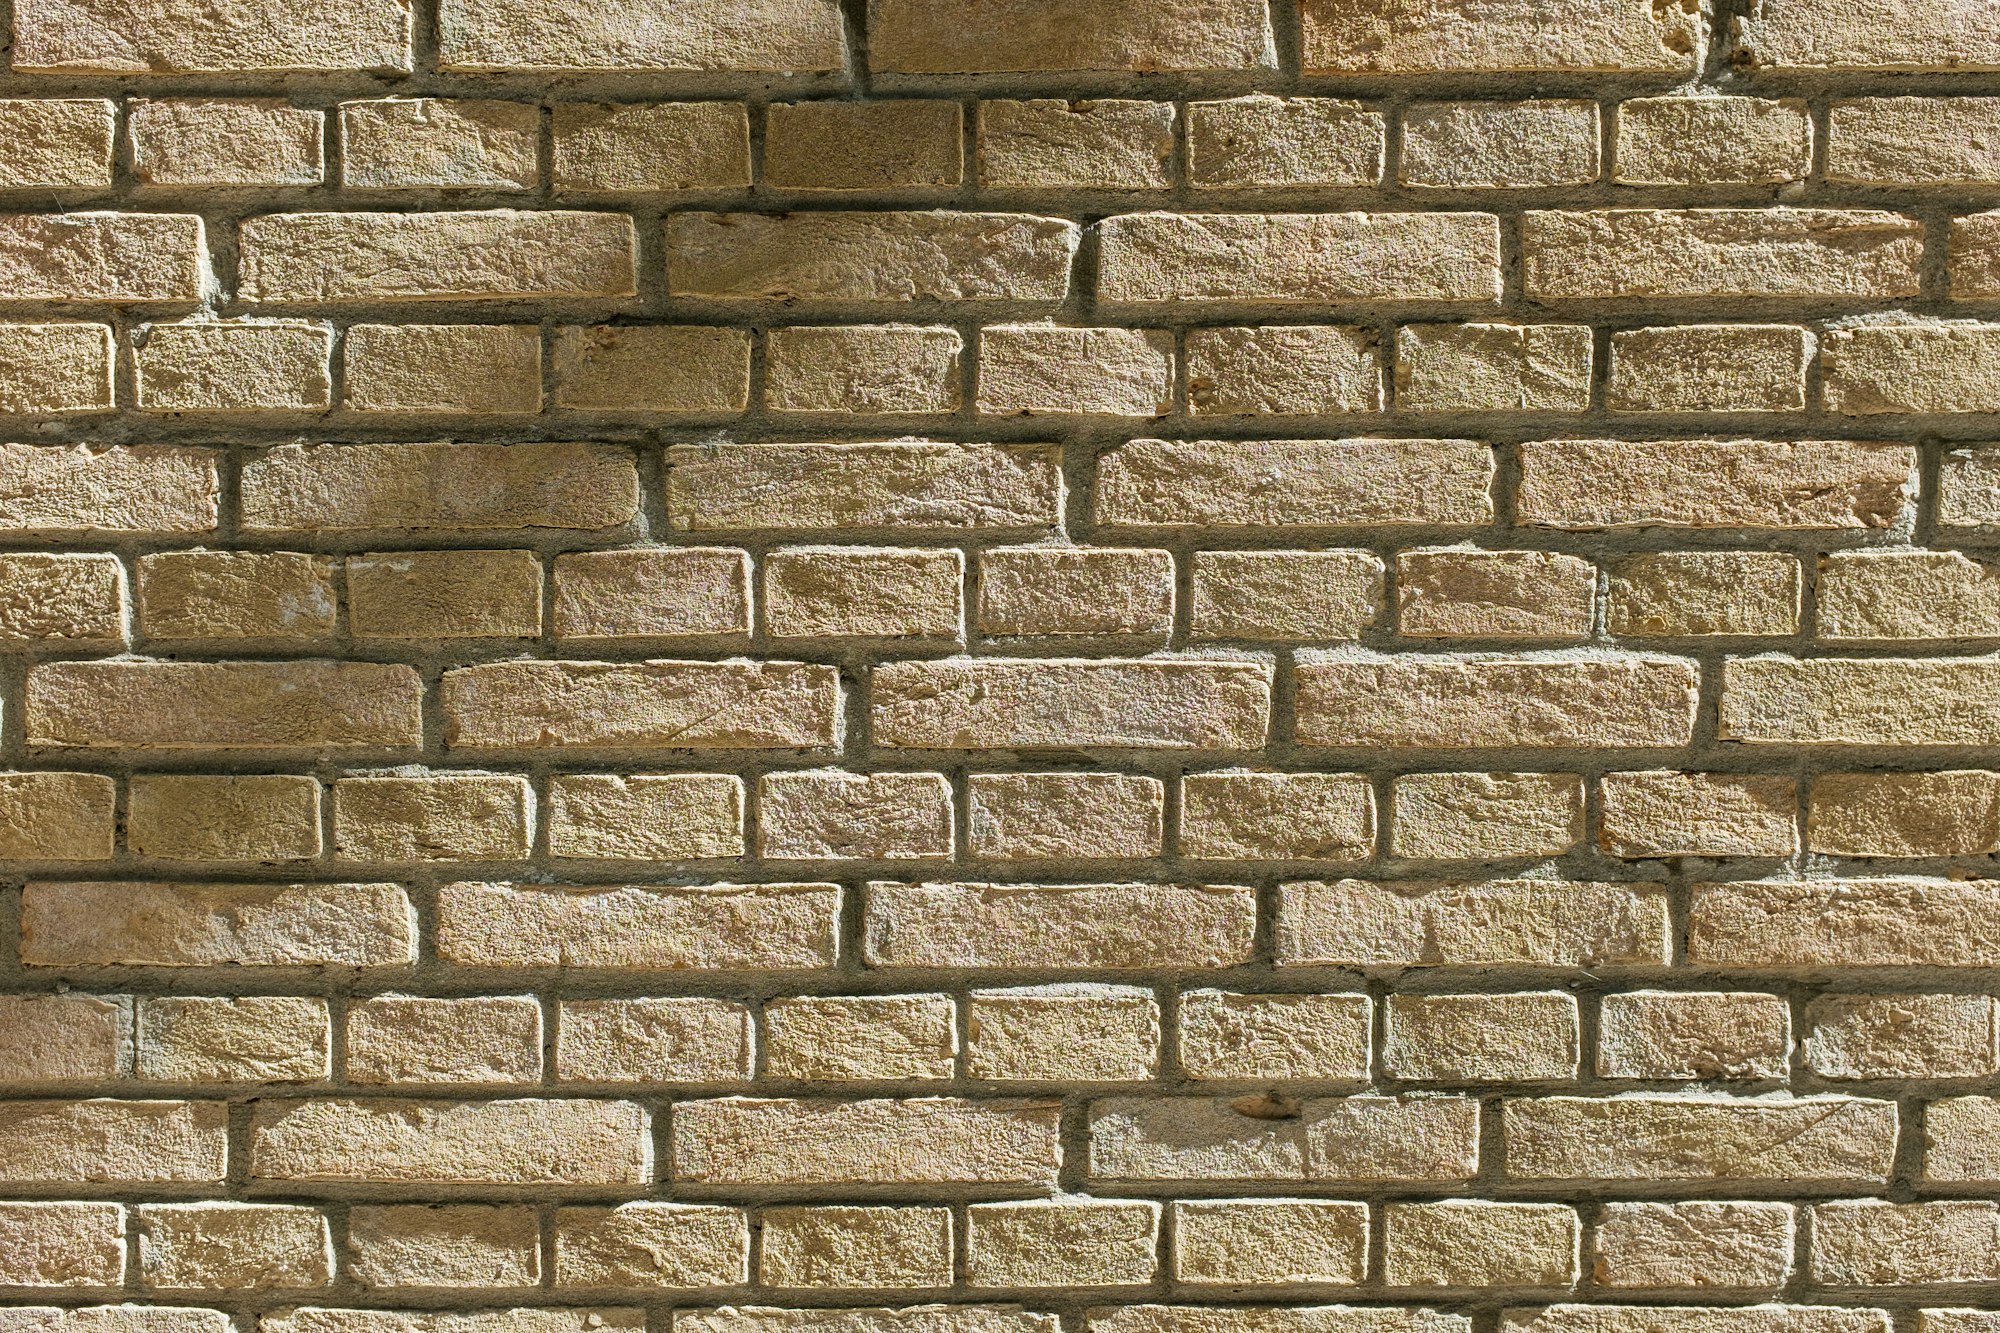 A set of bricks making up a wall.